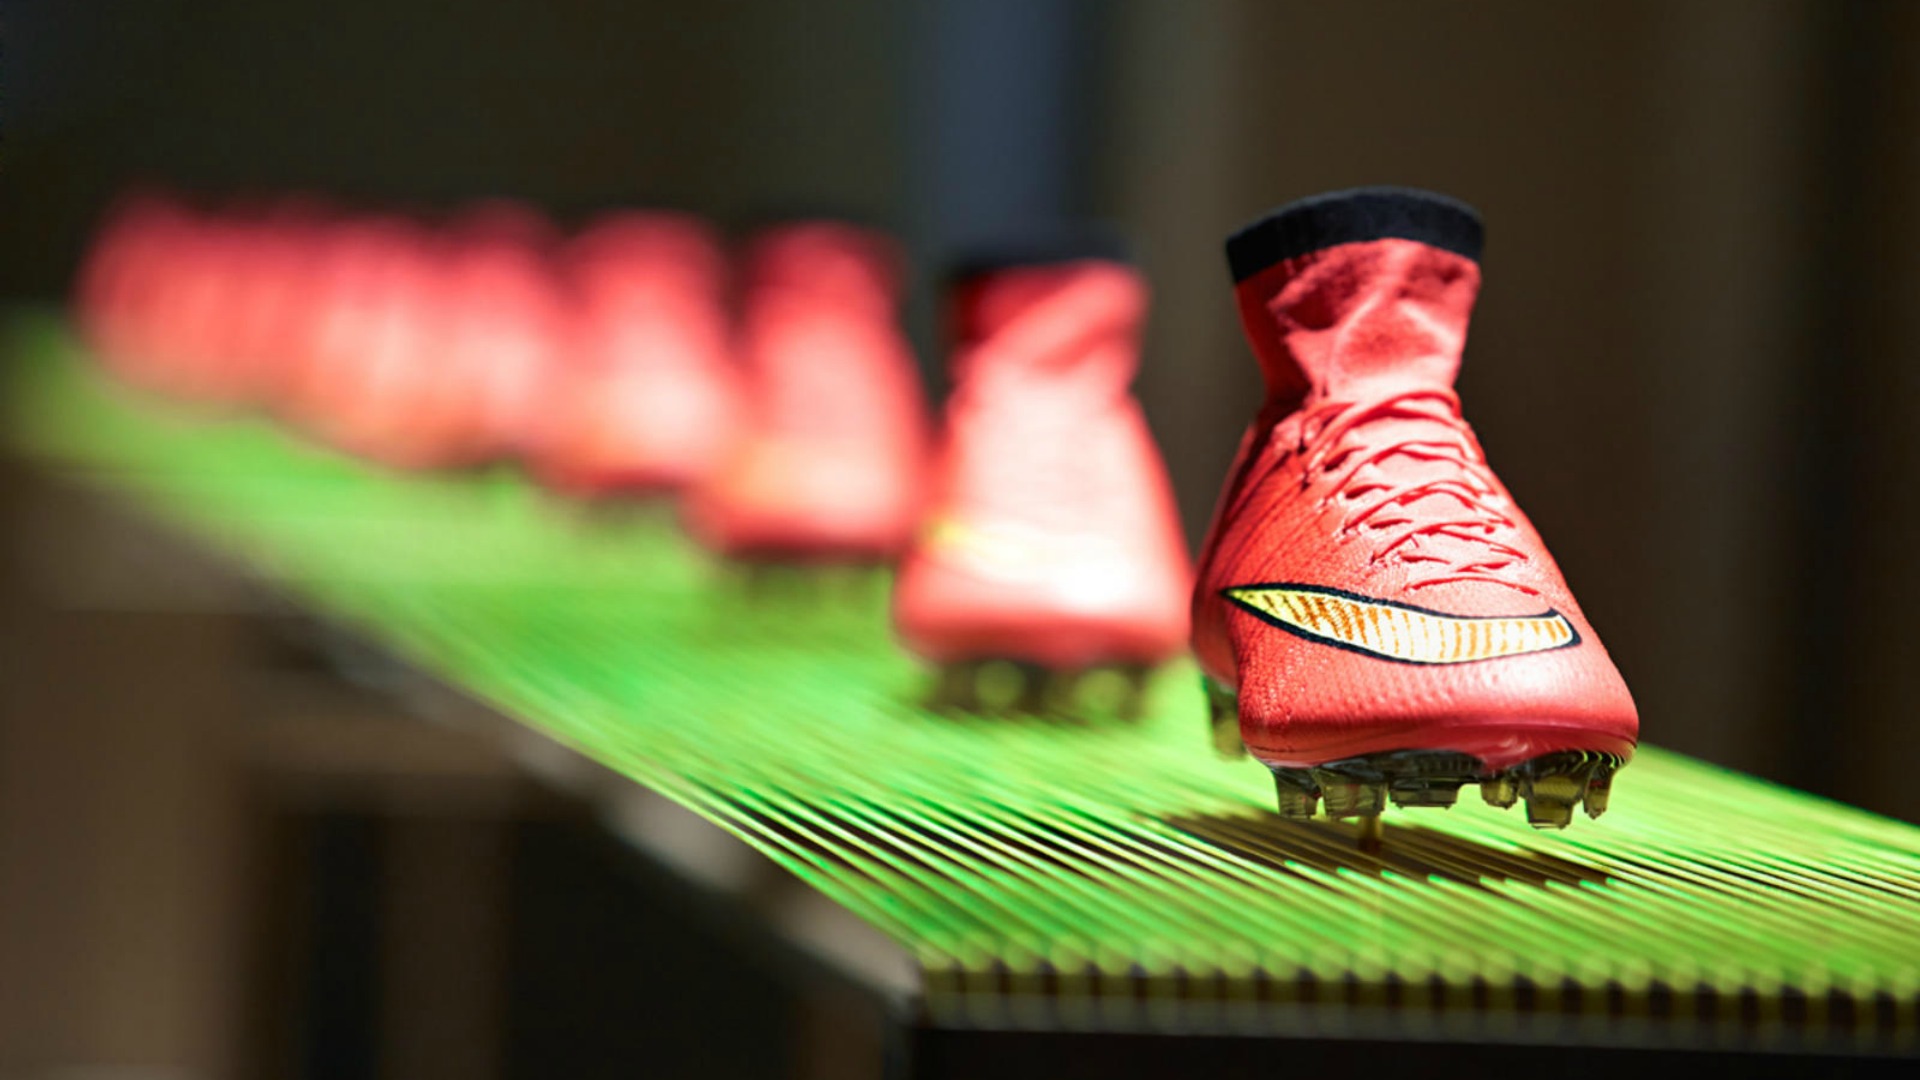 Giày bóng đá da vải được ra mắt lần đầu tại Worldcup 2014 với những đôi giày cổ cao